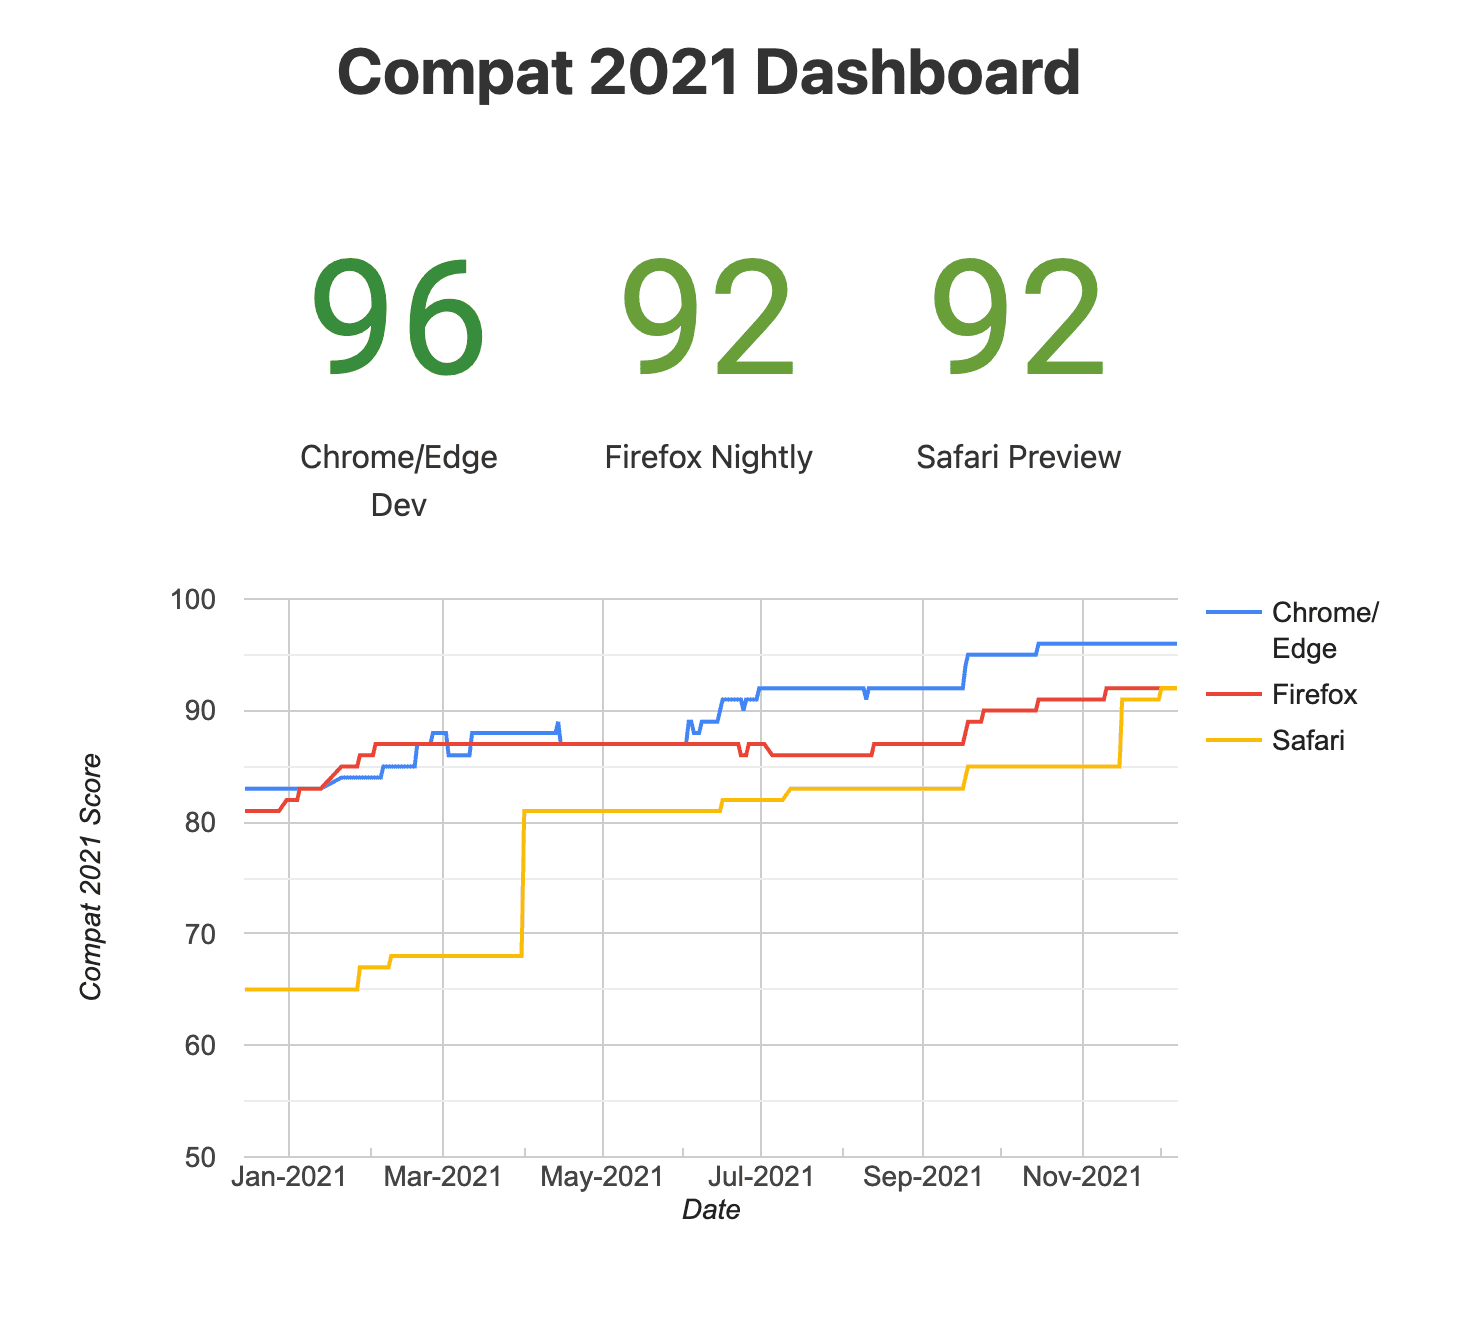 תמונת מצב של Compat
מרכז הבקרה לשנת 2021 (דפדפנים ניסיוניים)